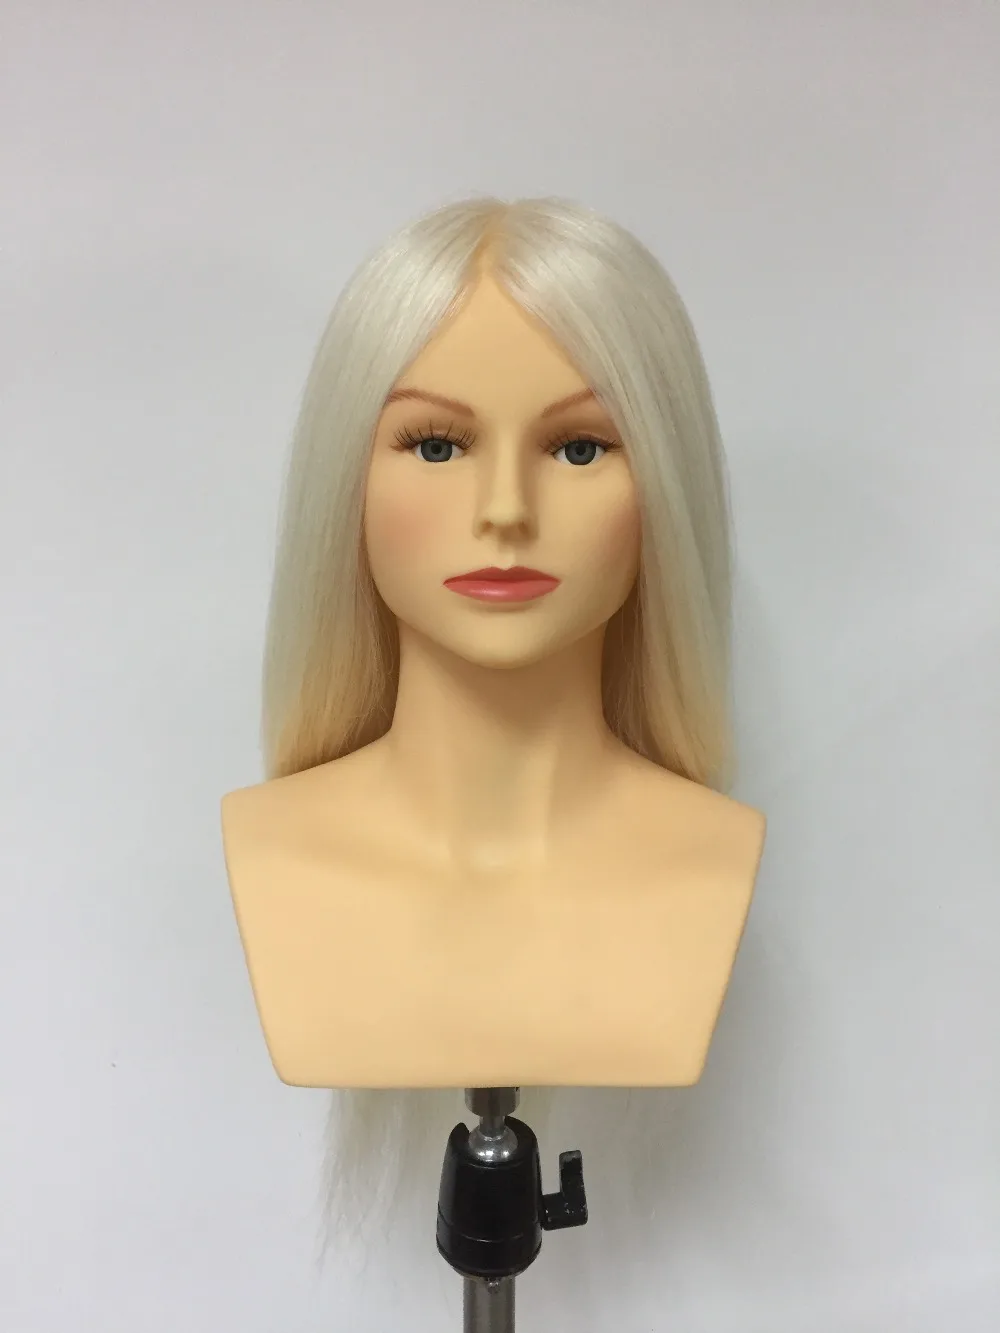 PROHAIR OMC одобренный 40 см 1" белый козья шерсть конкурс манекен головы Парикмахерская манекен кукла голова для парикмахеров